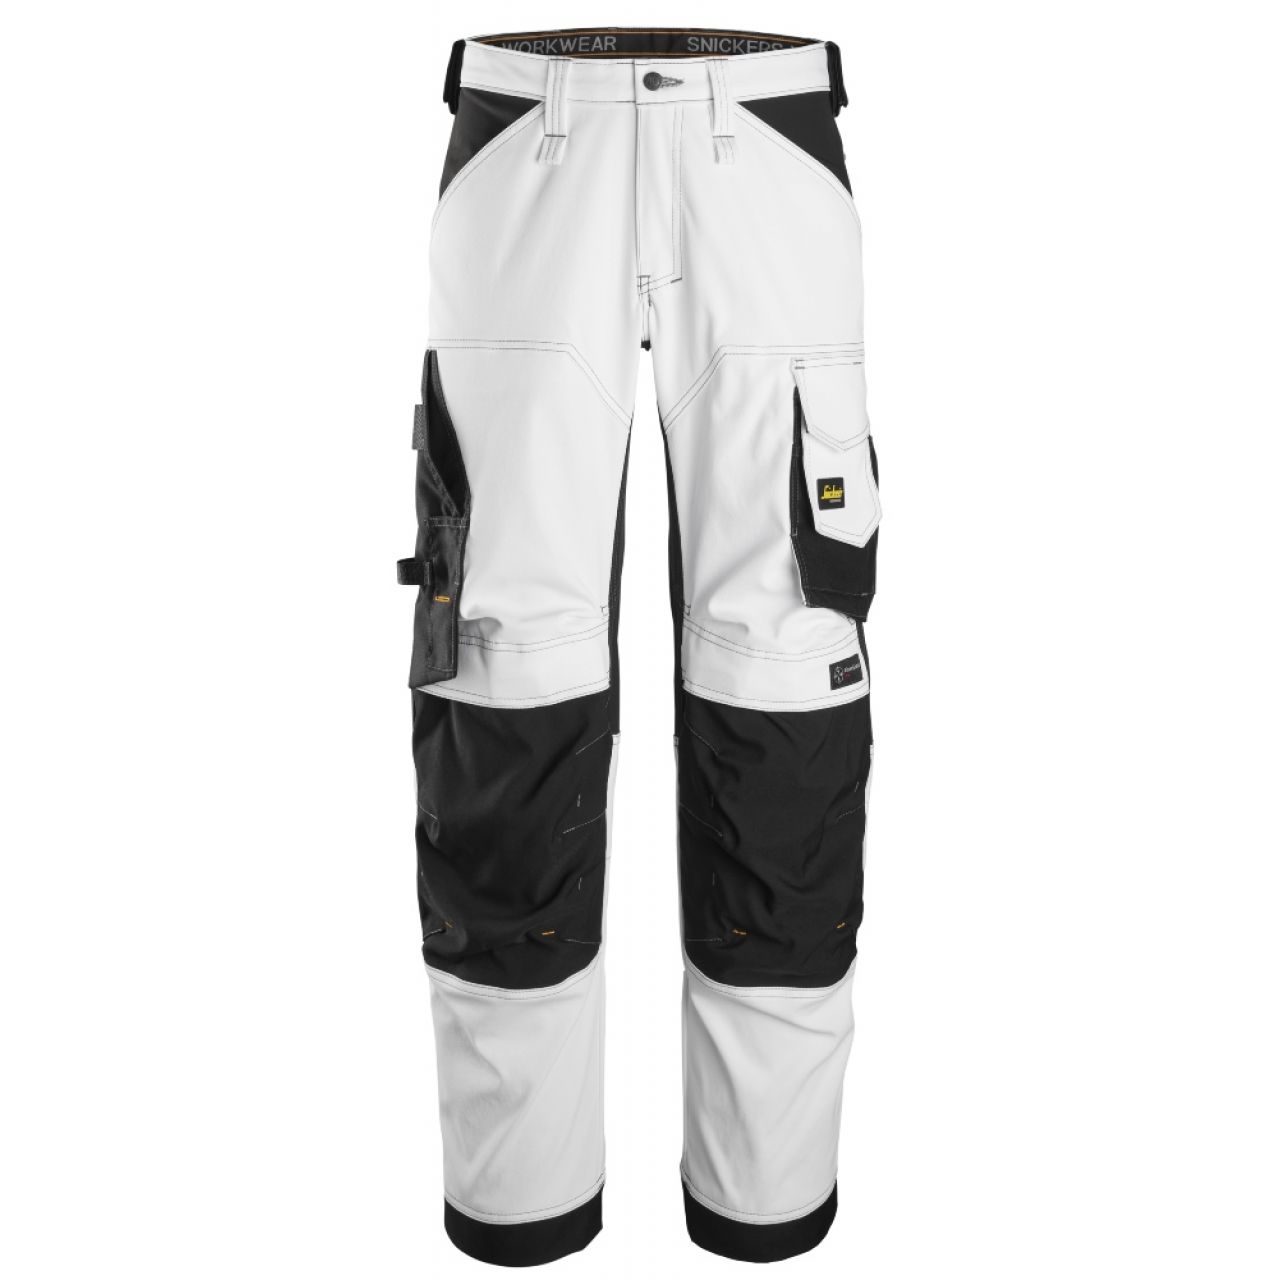 6351 Pantalones largos de trabajo elásticos de ajuste holgado AllroundWork blanco-negro talla 208